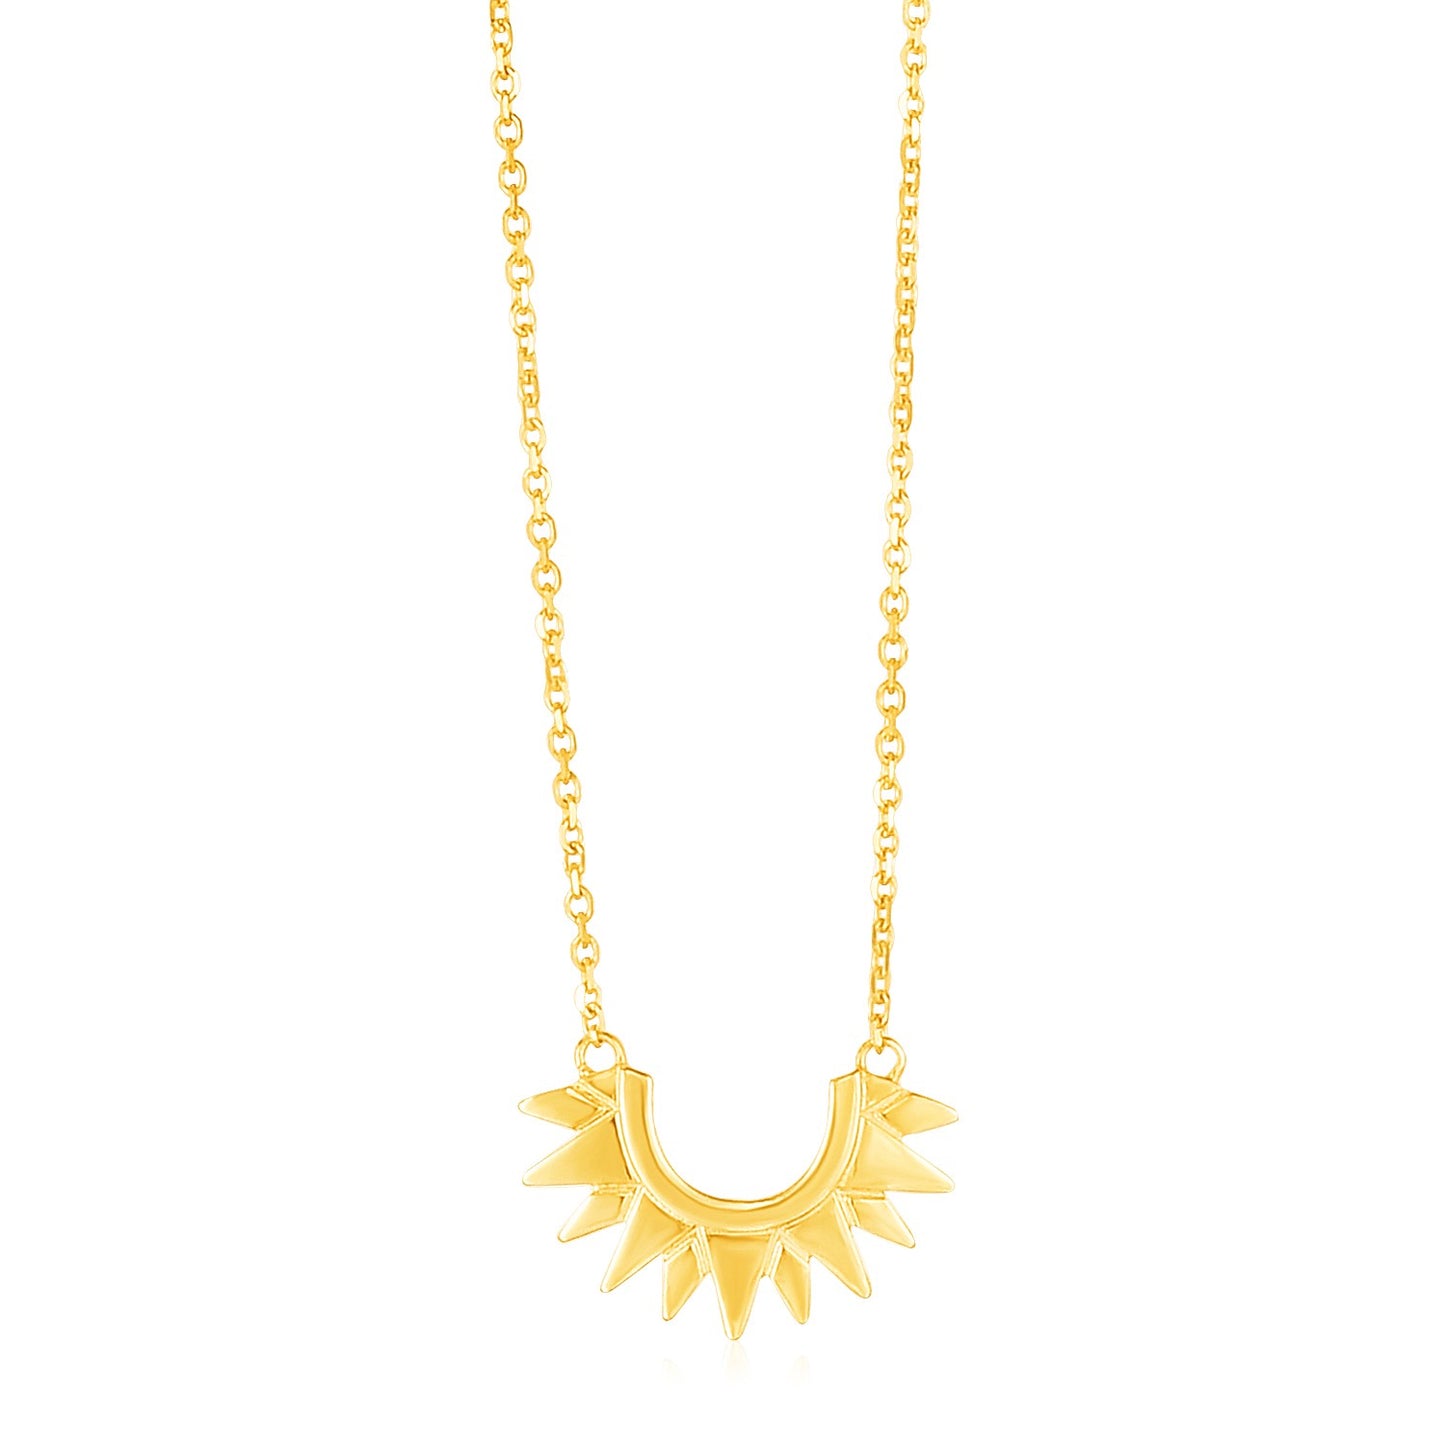 14k Yellow Gold Polished Sunburst Necklace